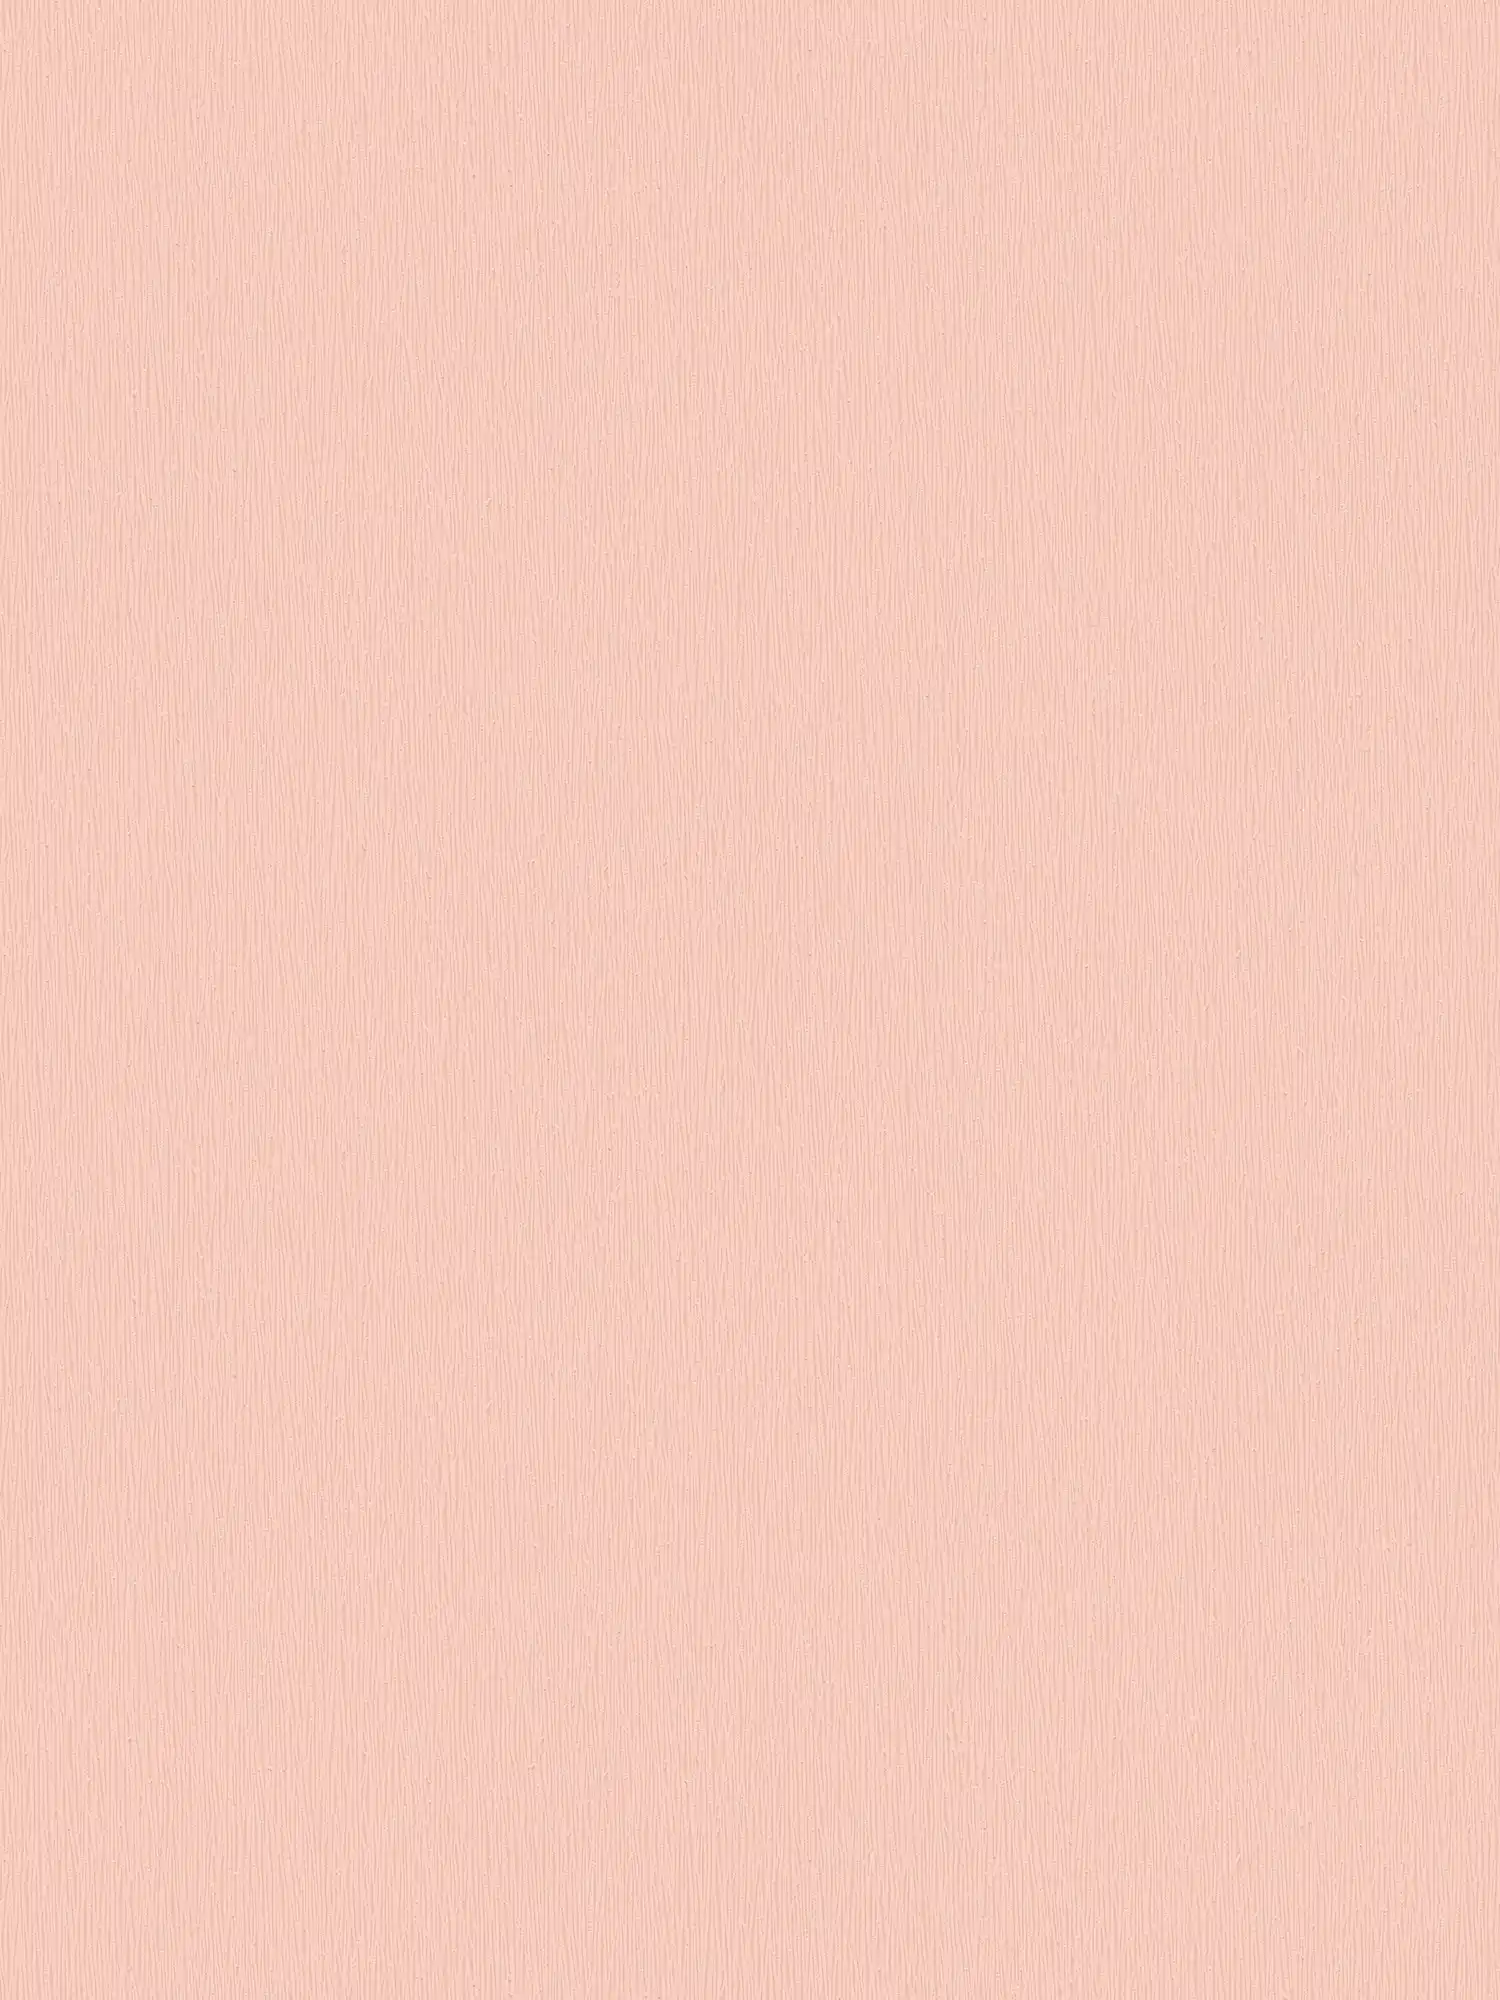 Carta da parati in tessuto non tessuto rosa con struttura monocromatica - rosa, bianco
